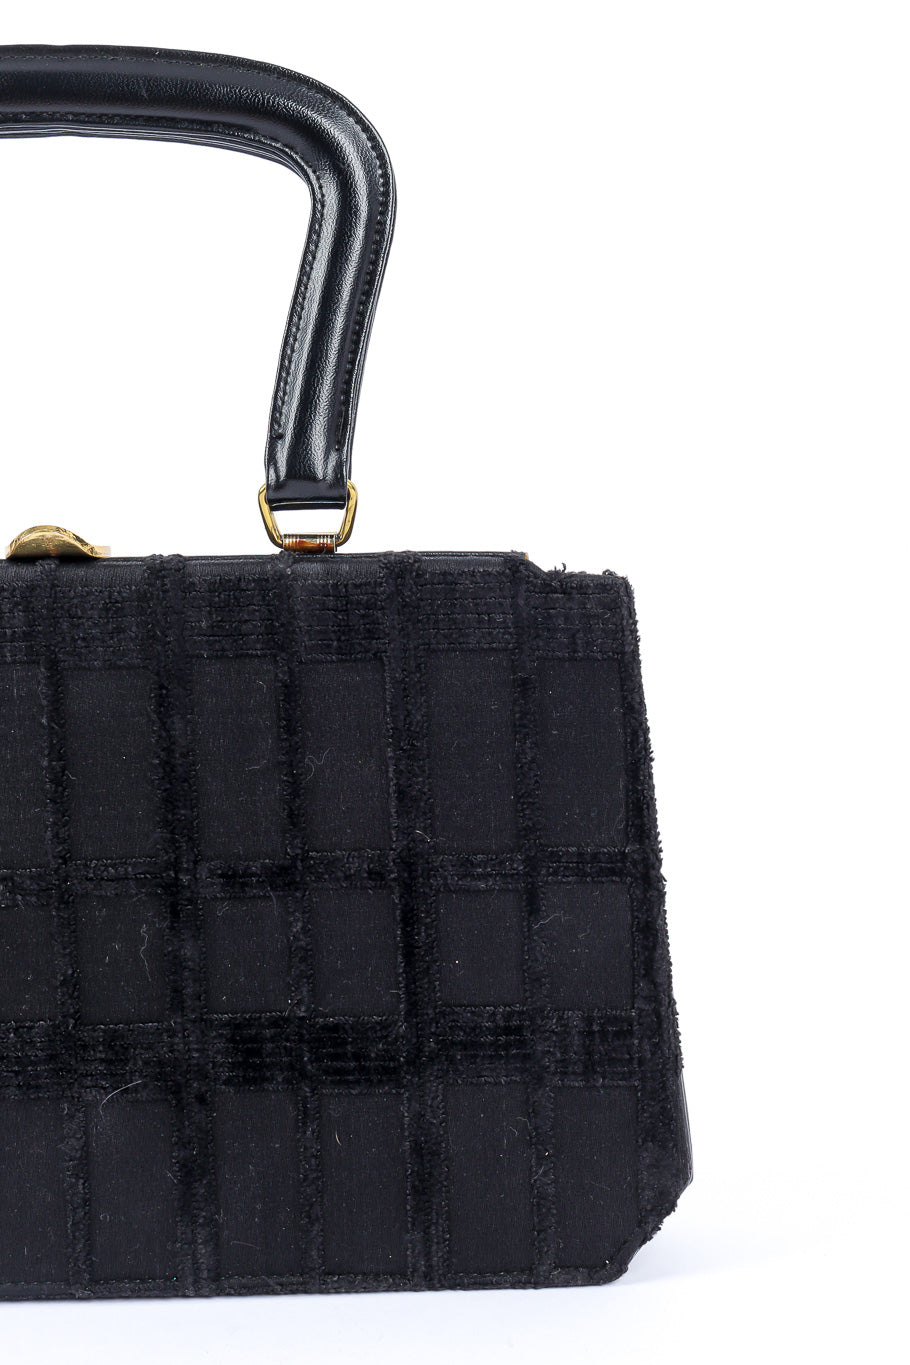 Meyers bouclé accordion handbag fabric product shot @recessla